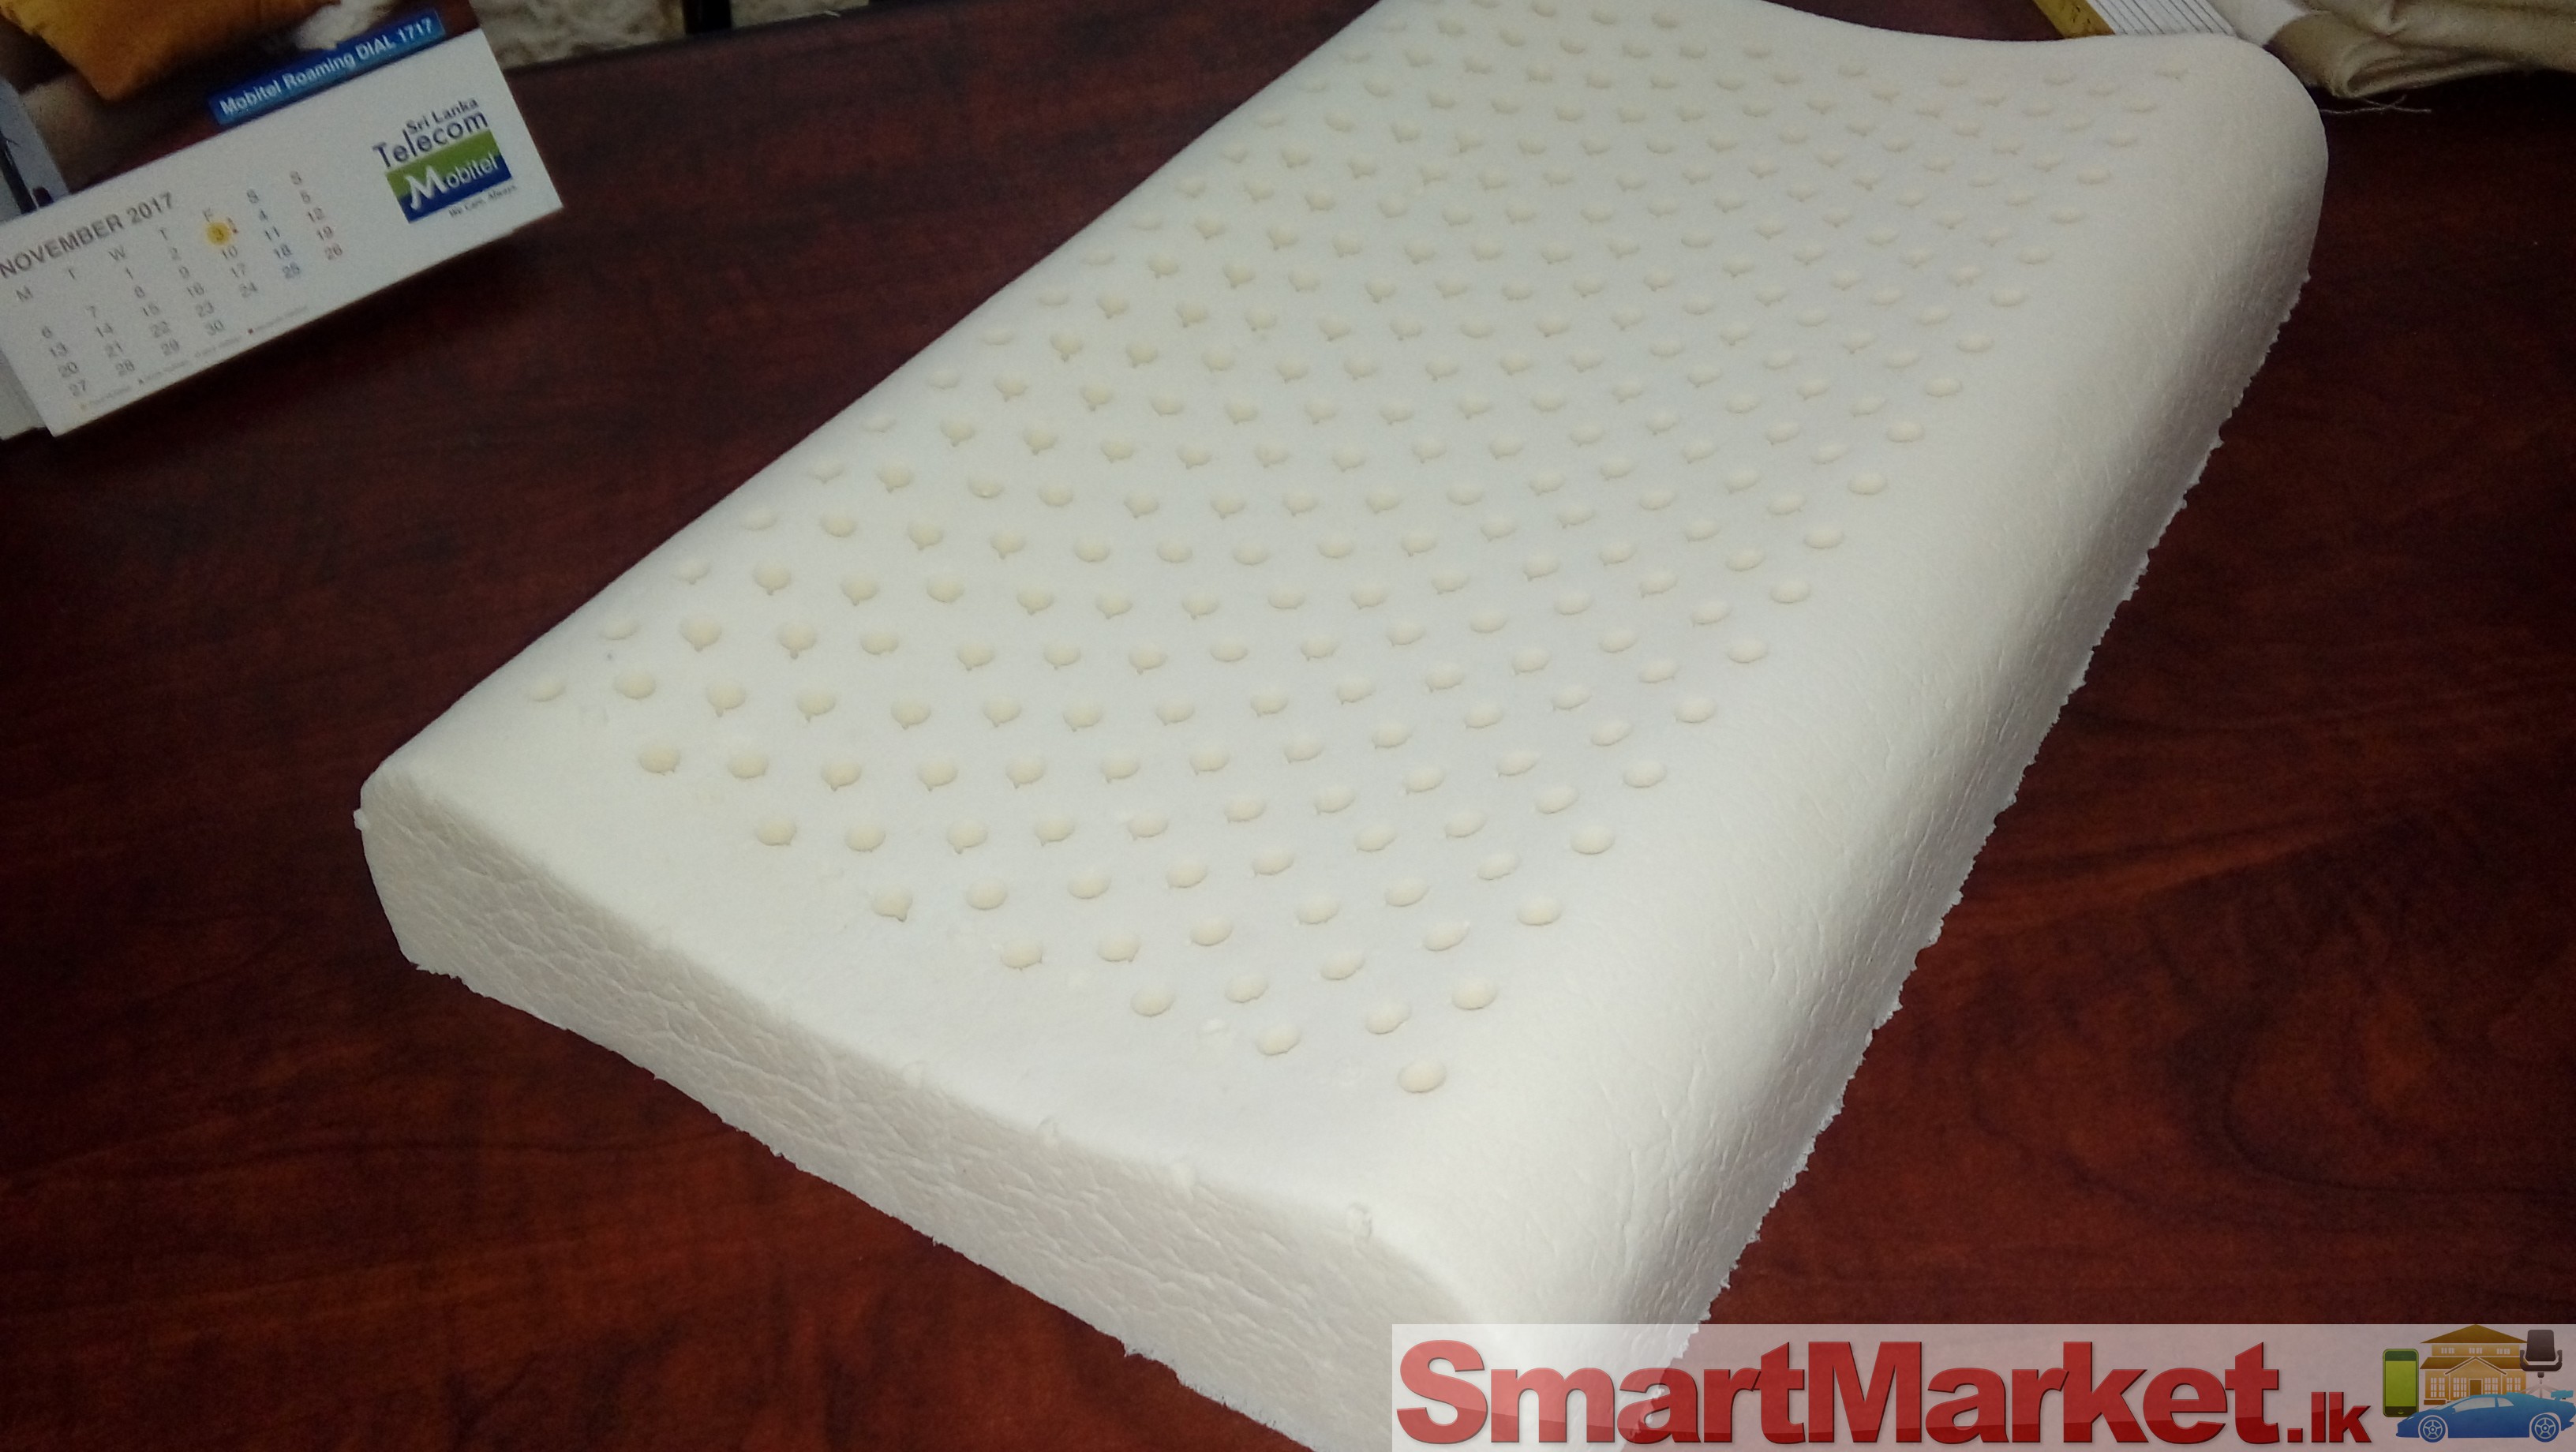 Foam rubber pillow